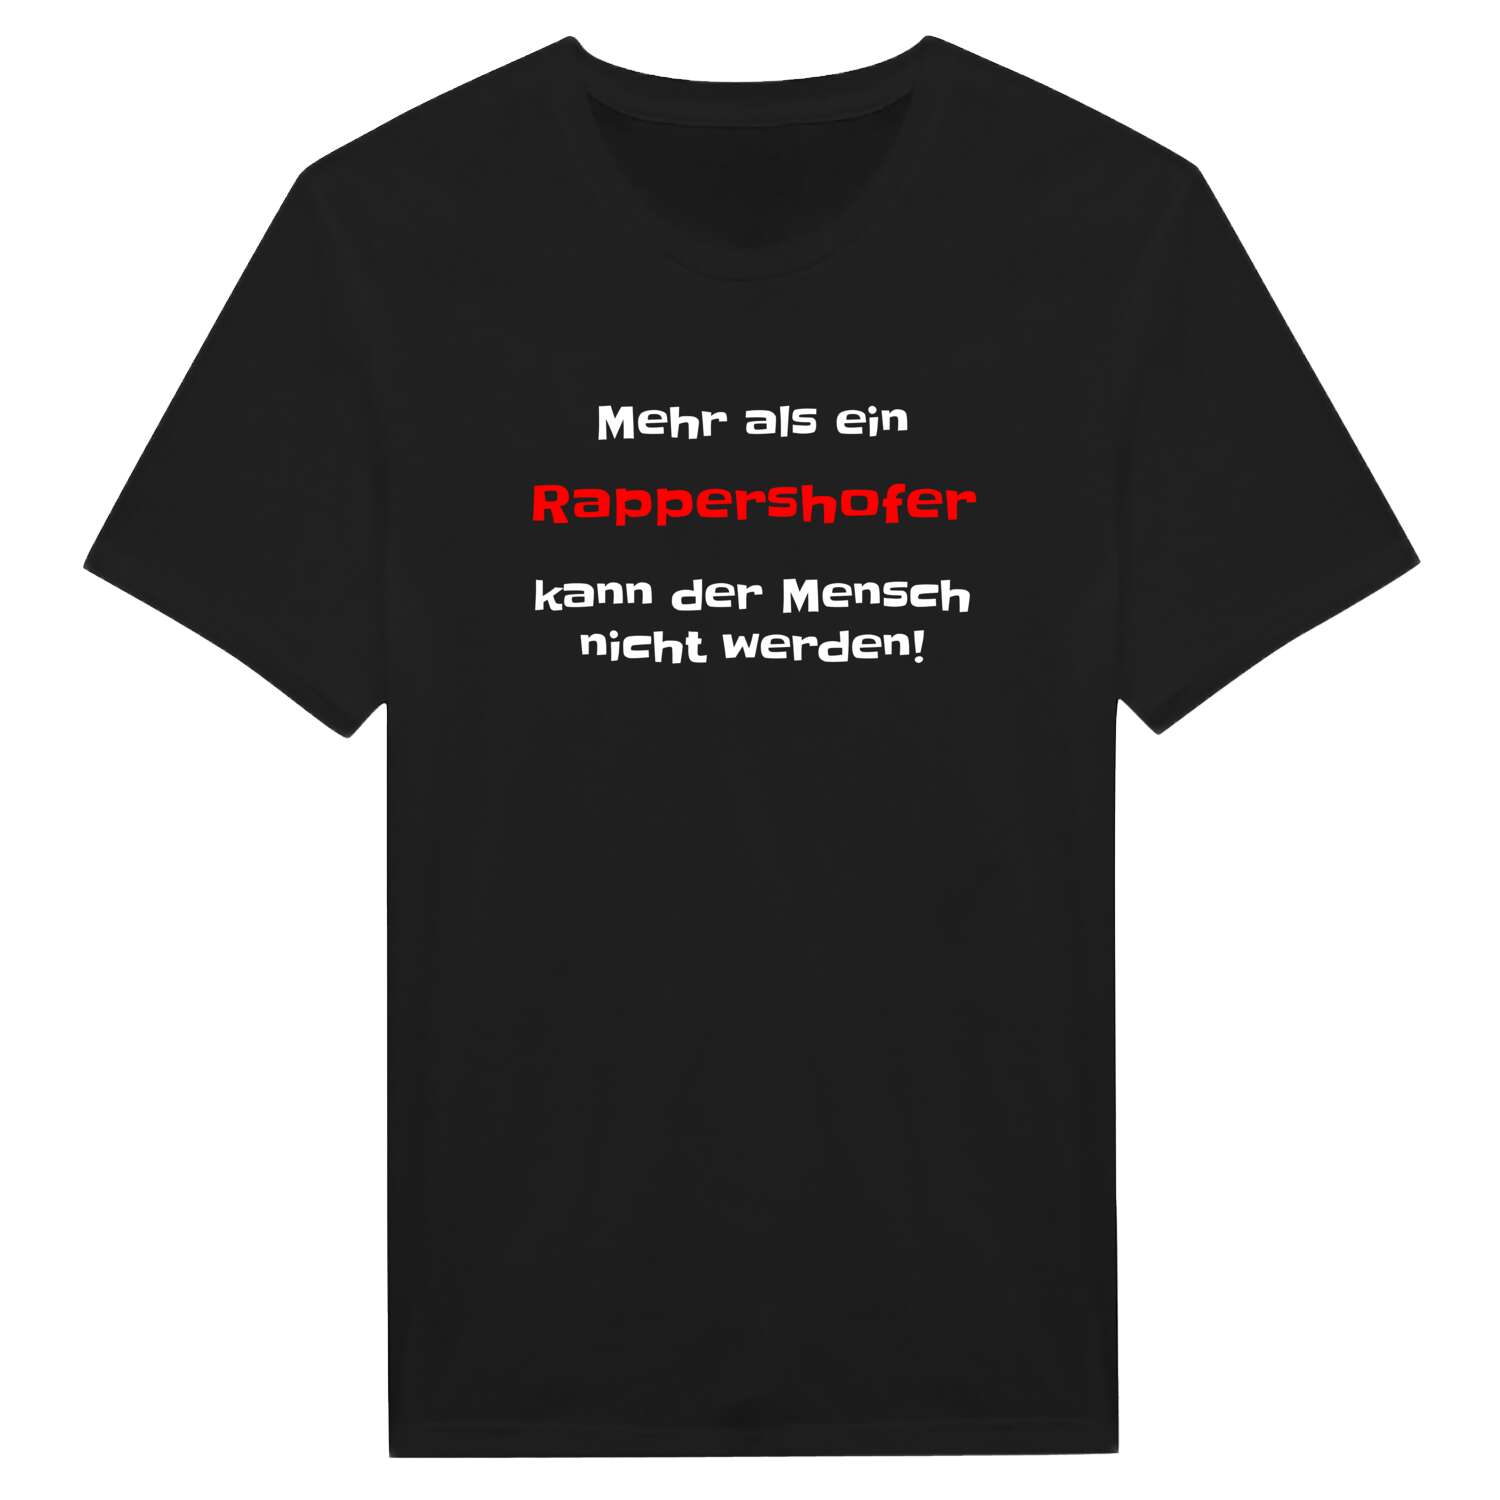 Rappershof T-Shirt »Mehr als ein«